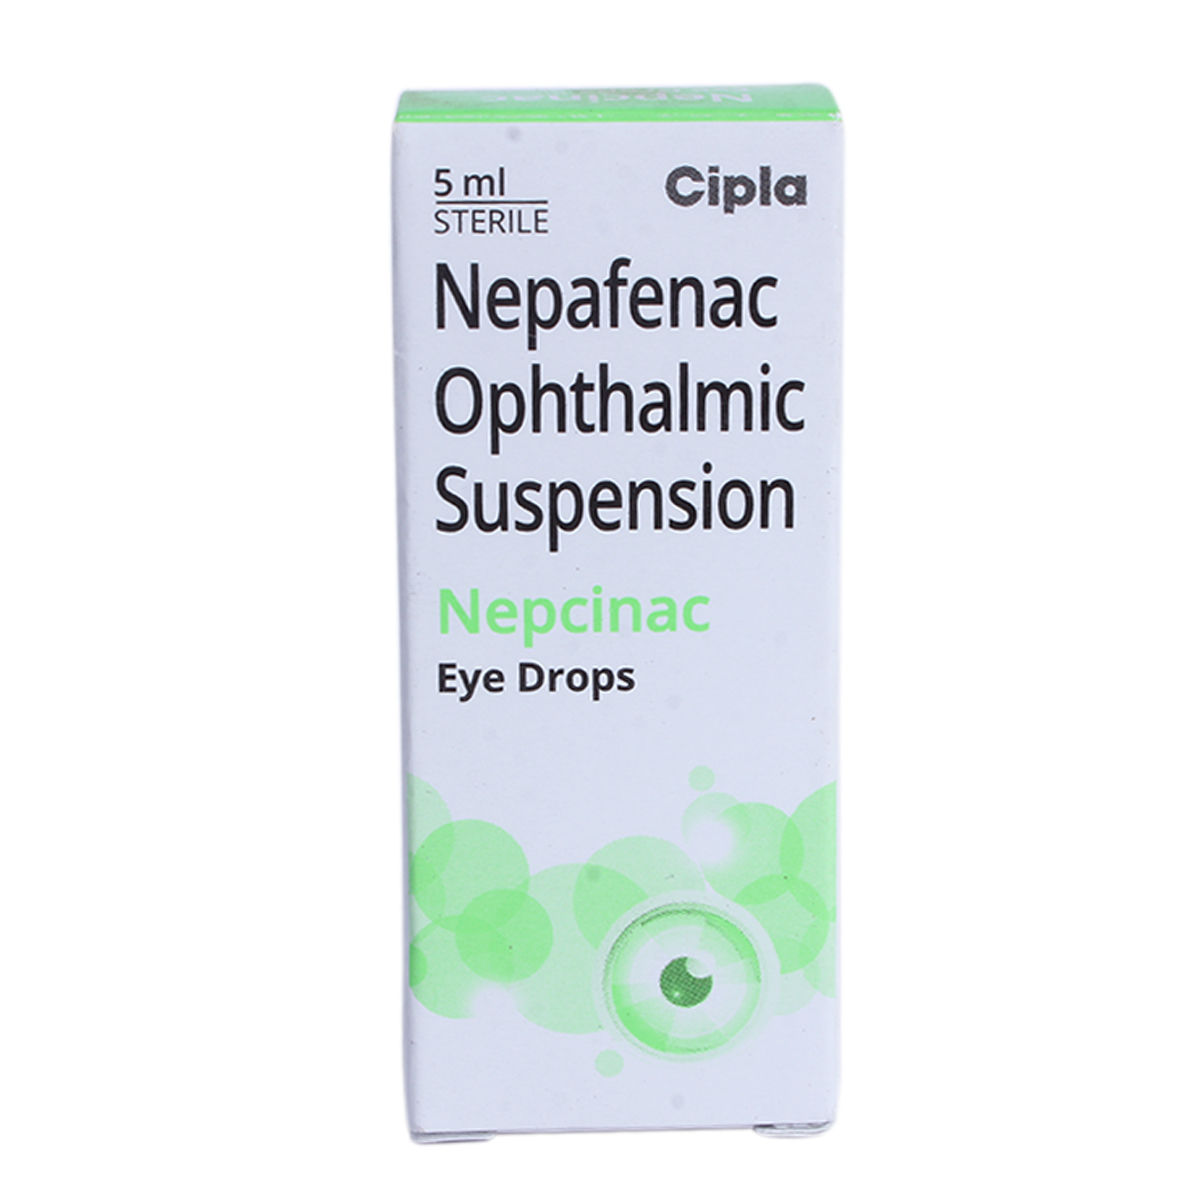 Buy Nepcinac Eye Drops 5 ml Online